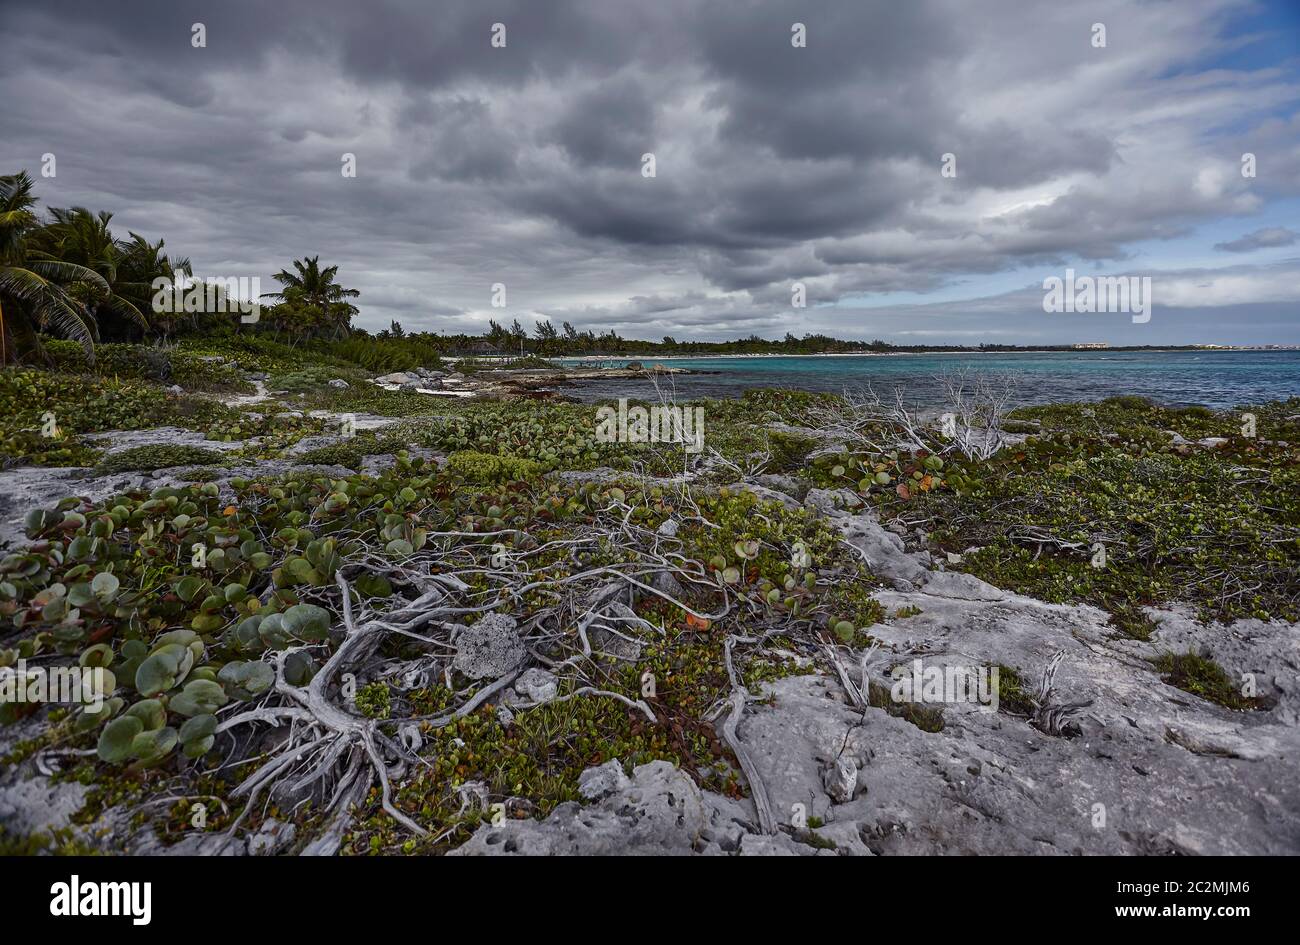 Végétation tropicale qui pousse parmi les rochers de la côte des Caraïbes du Mexique, précisément dans la plage de Xpu-Ha. Banque D'Images